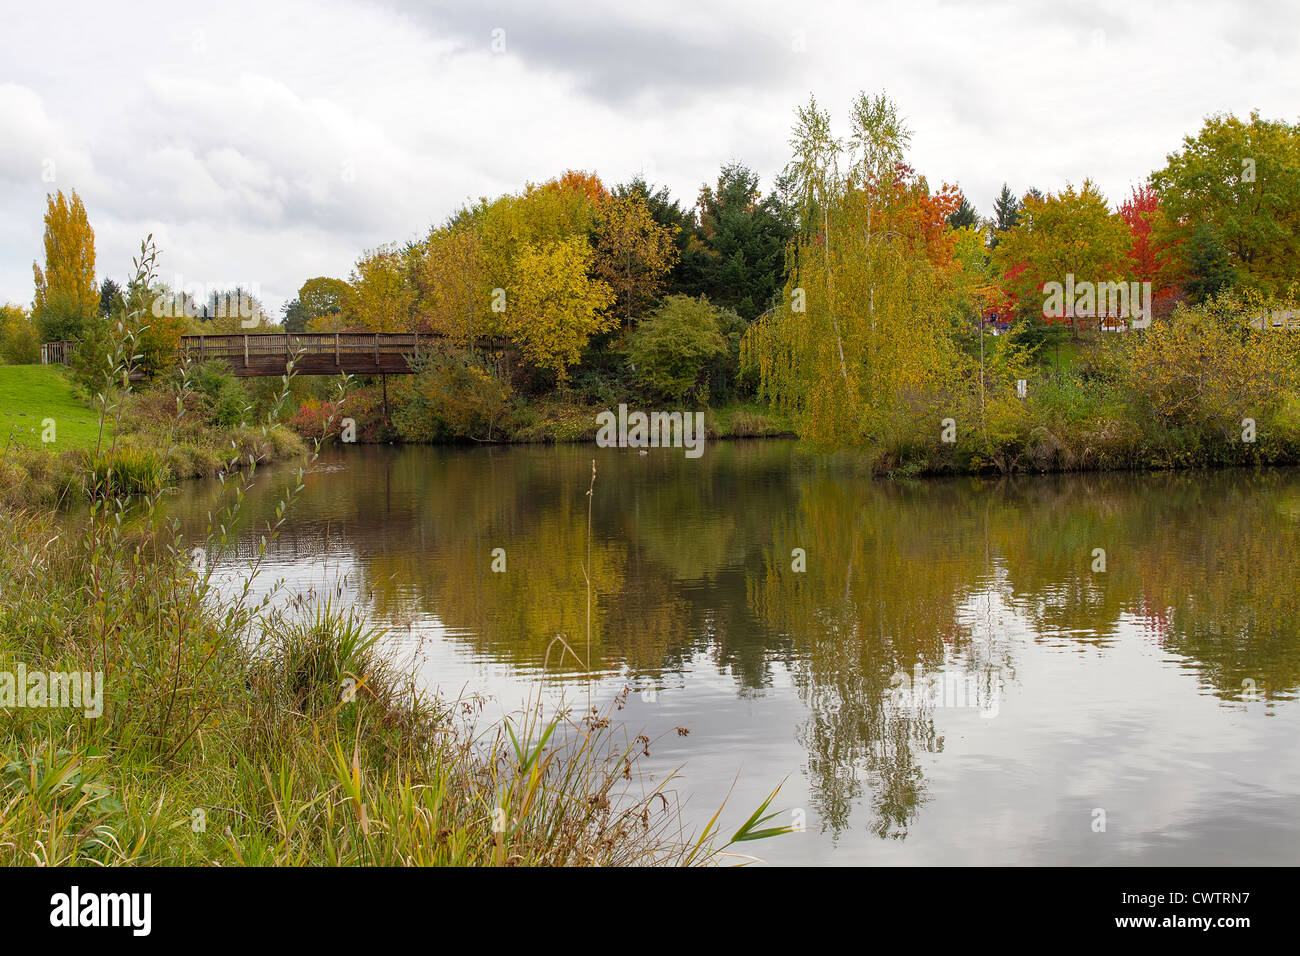 Ponte in legno sul lago presso i Parchi nella stagione autunnale Foto Stock